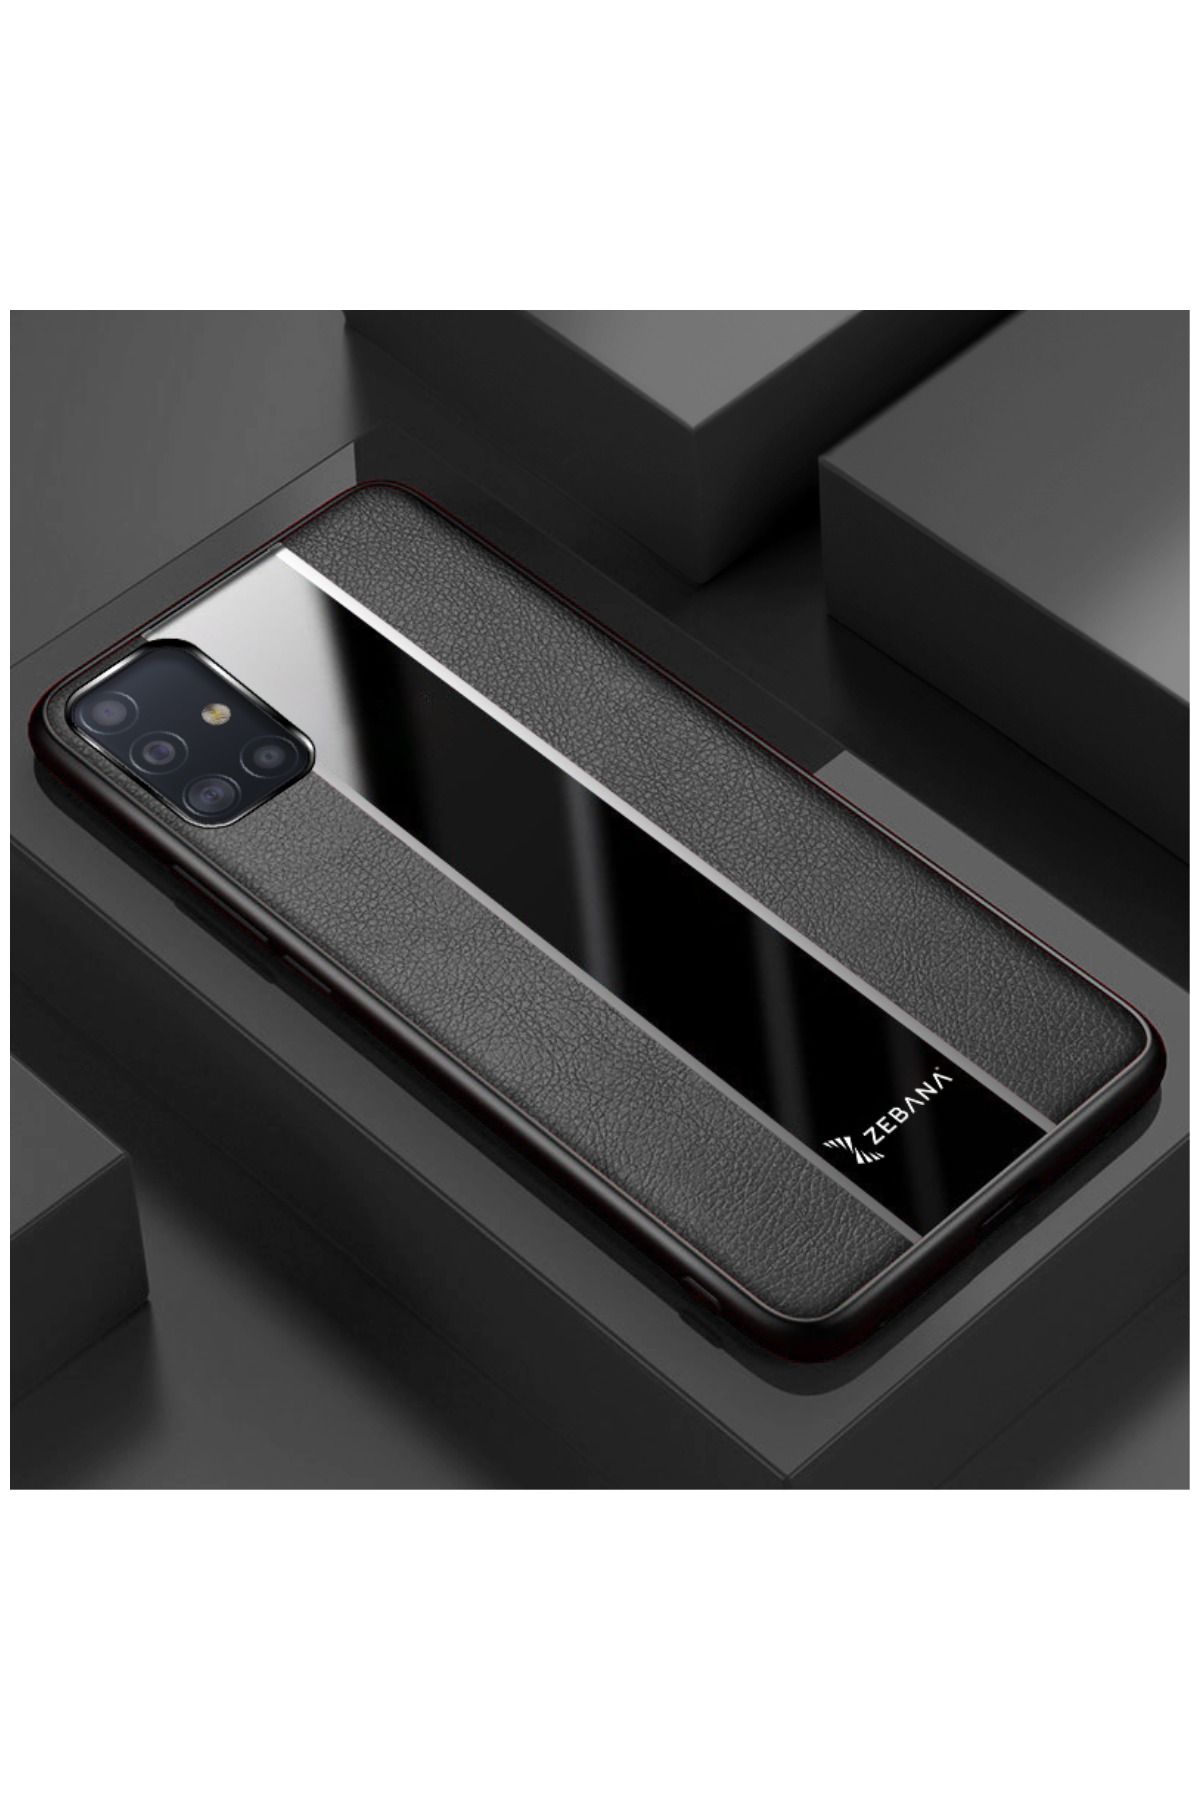 Zebana Samsung Galaxy A71 Uyumlu Kılıf Premium Deri Kılıf Siyah